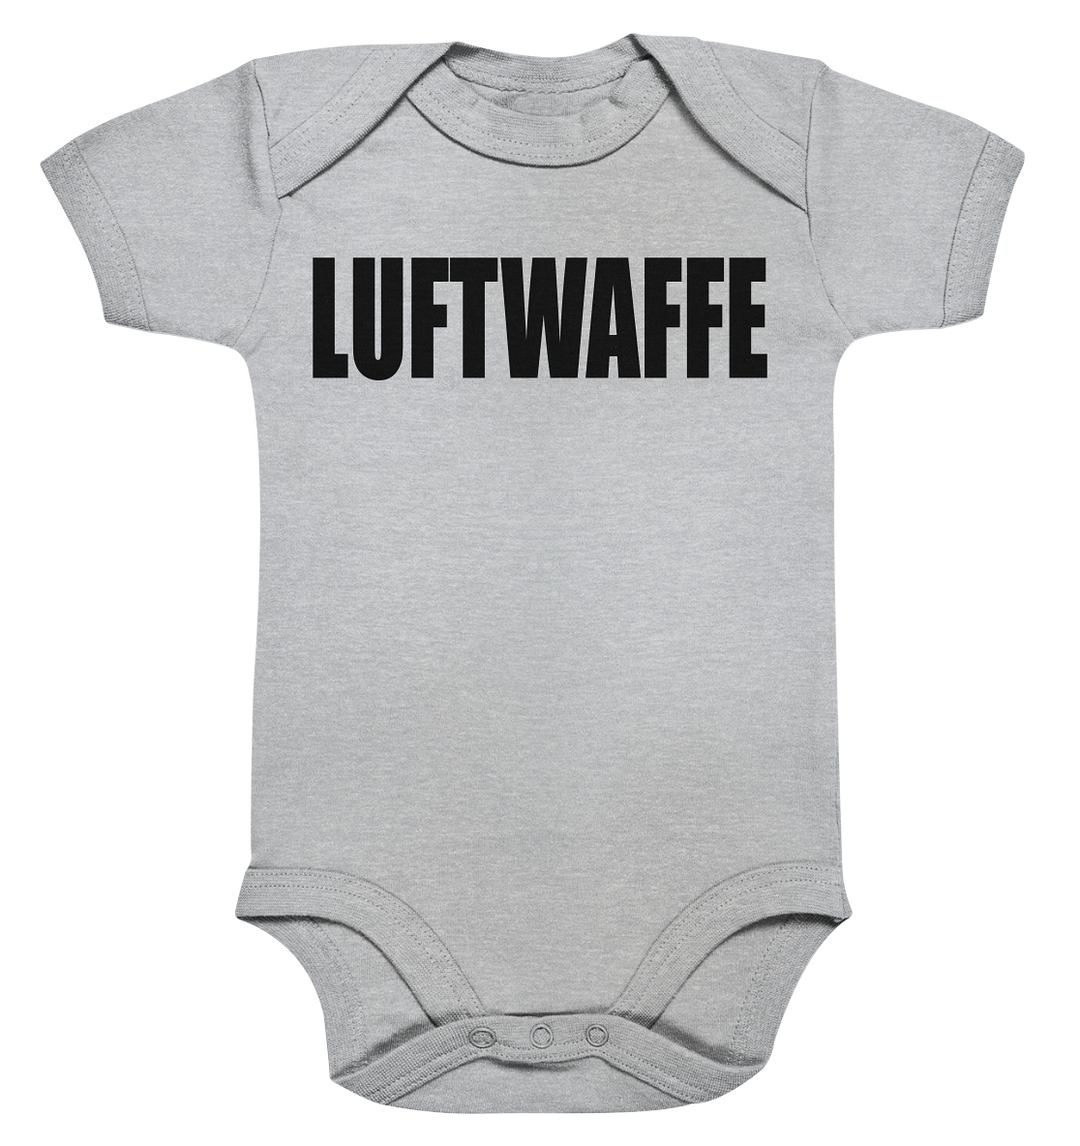 LUFTWAFFE - Baby Bodysuite